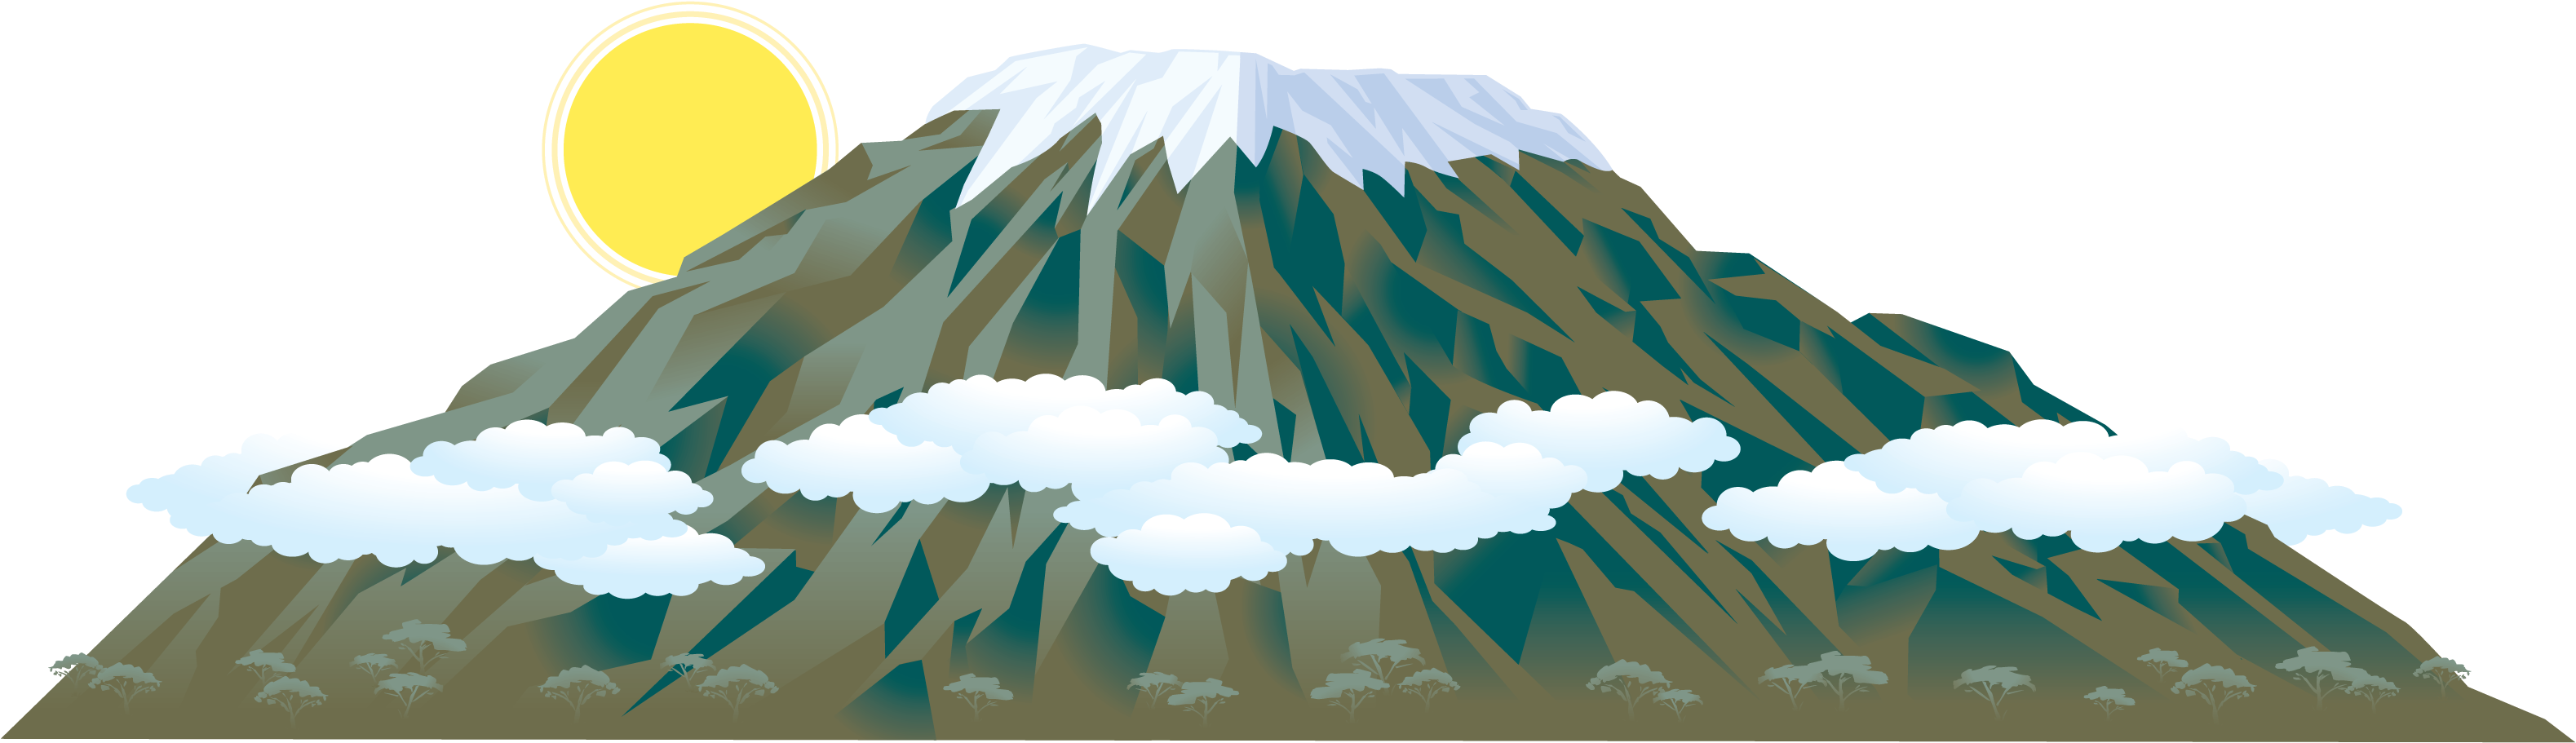 Mountain Clipart Kilimanjaro - Mount Kilimanjaro Clipart (3344x1088)